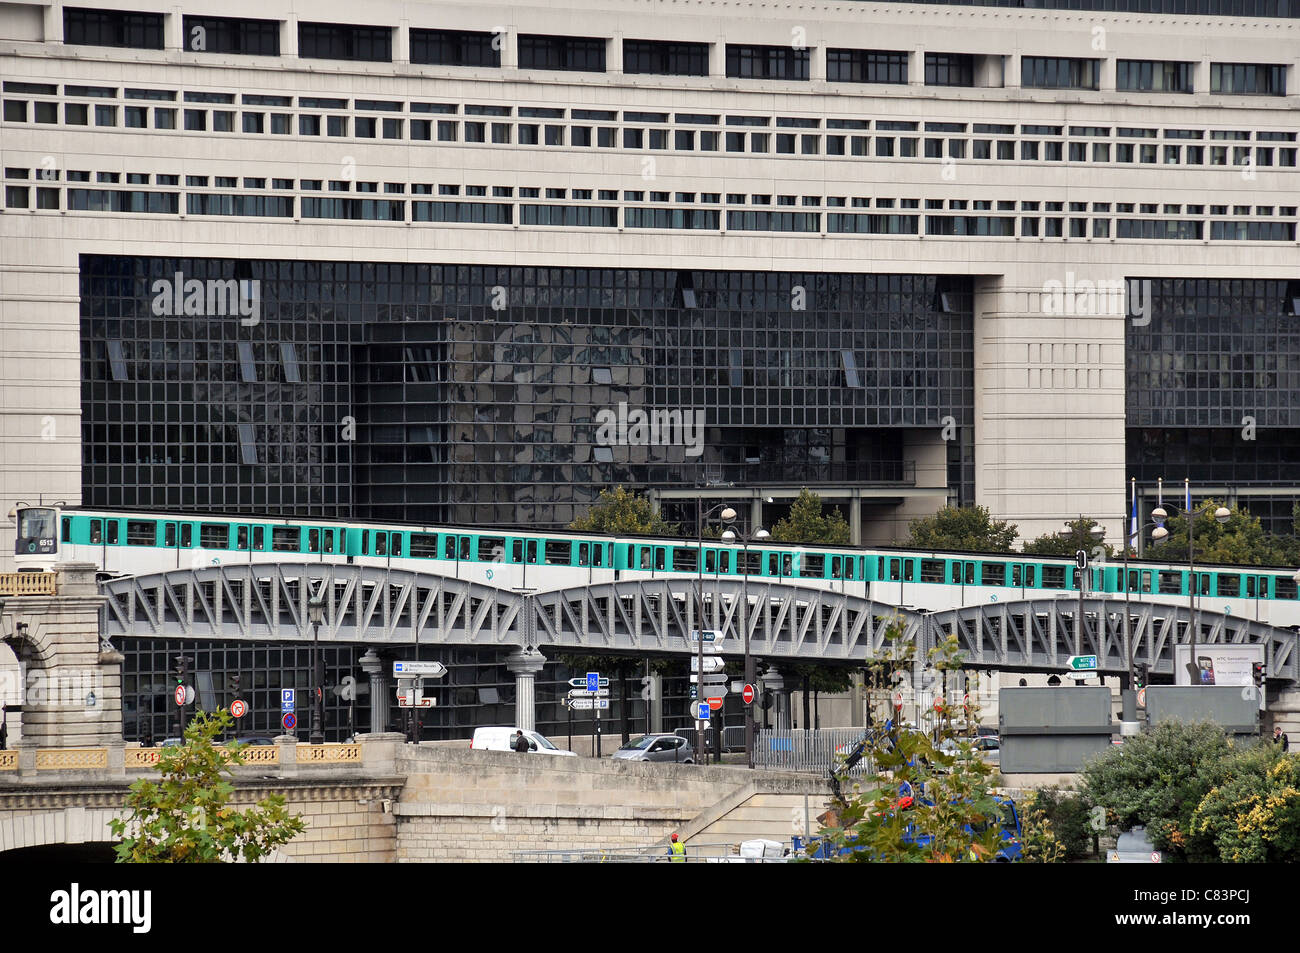 Le métro Pont de fer avant Bercy Ministère de l'économie et des finances Paris France Banque D'Images